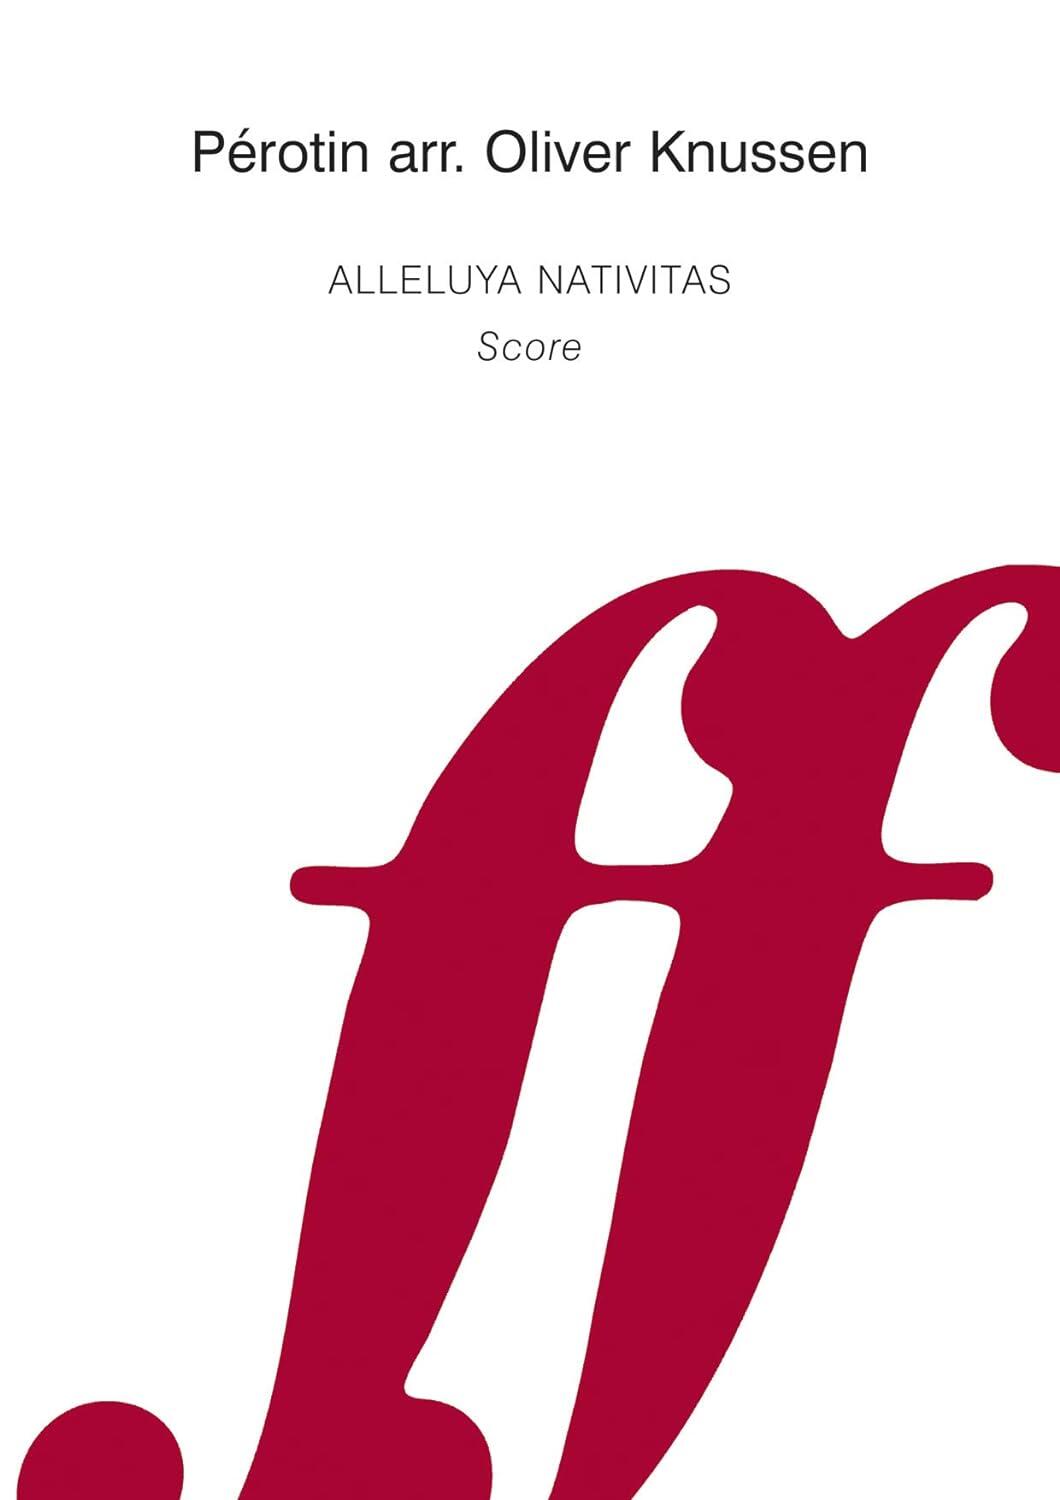 Alleluya Nativitas. Wind quintet Oliver Knussen  Wind Ensemble : photo 1